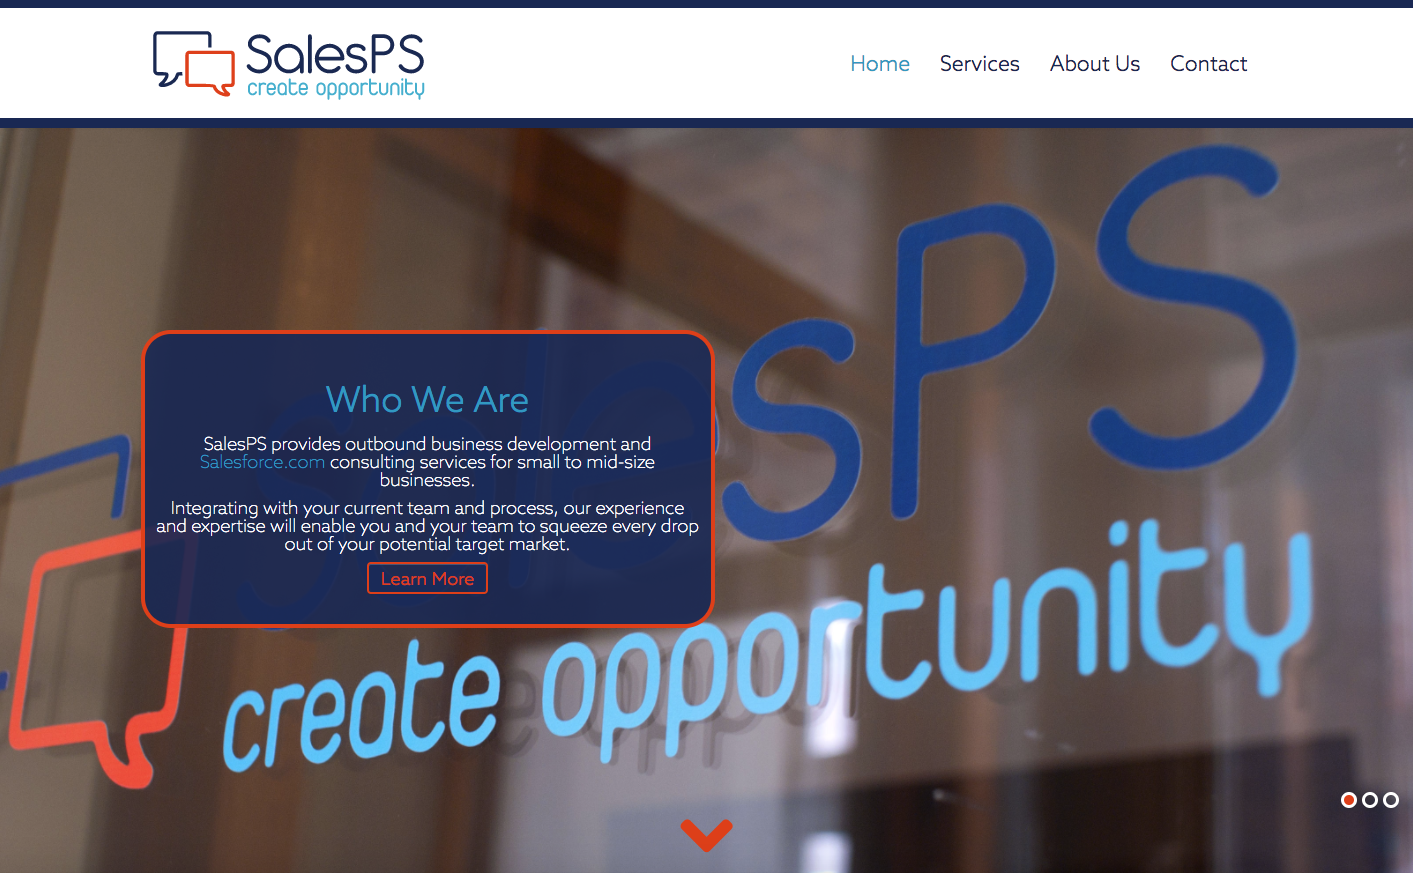 SalesPS website and rebranding